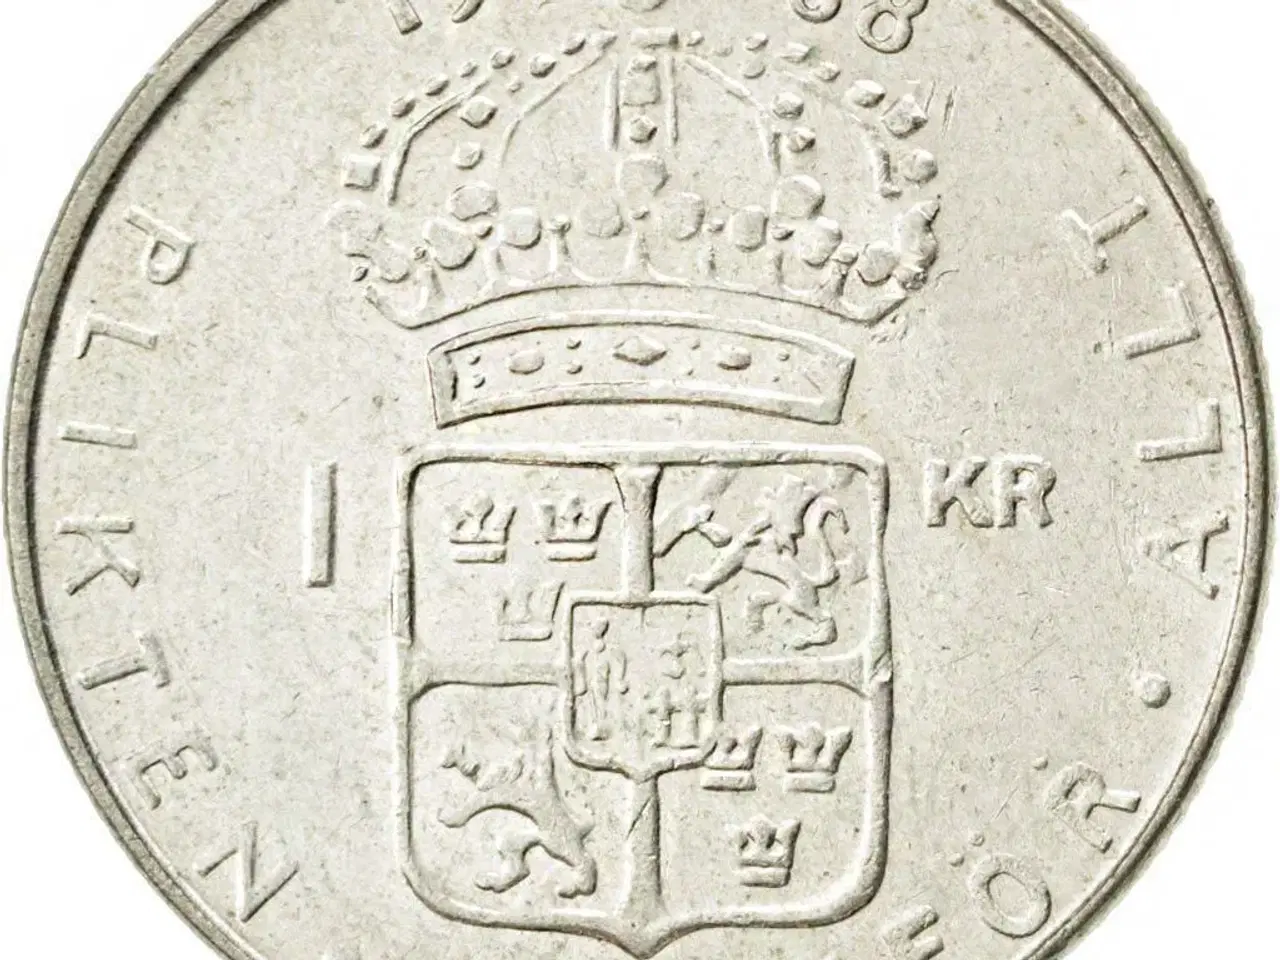 Billede 3 - Svenske 1 krona mønter fra 1952-1973